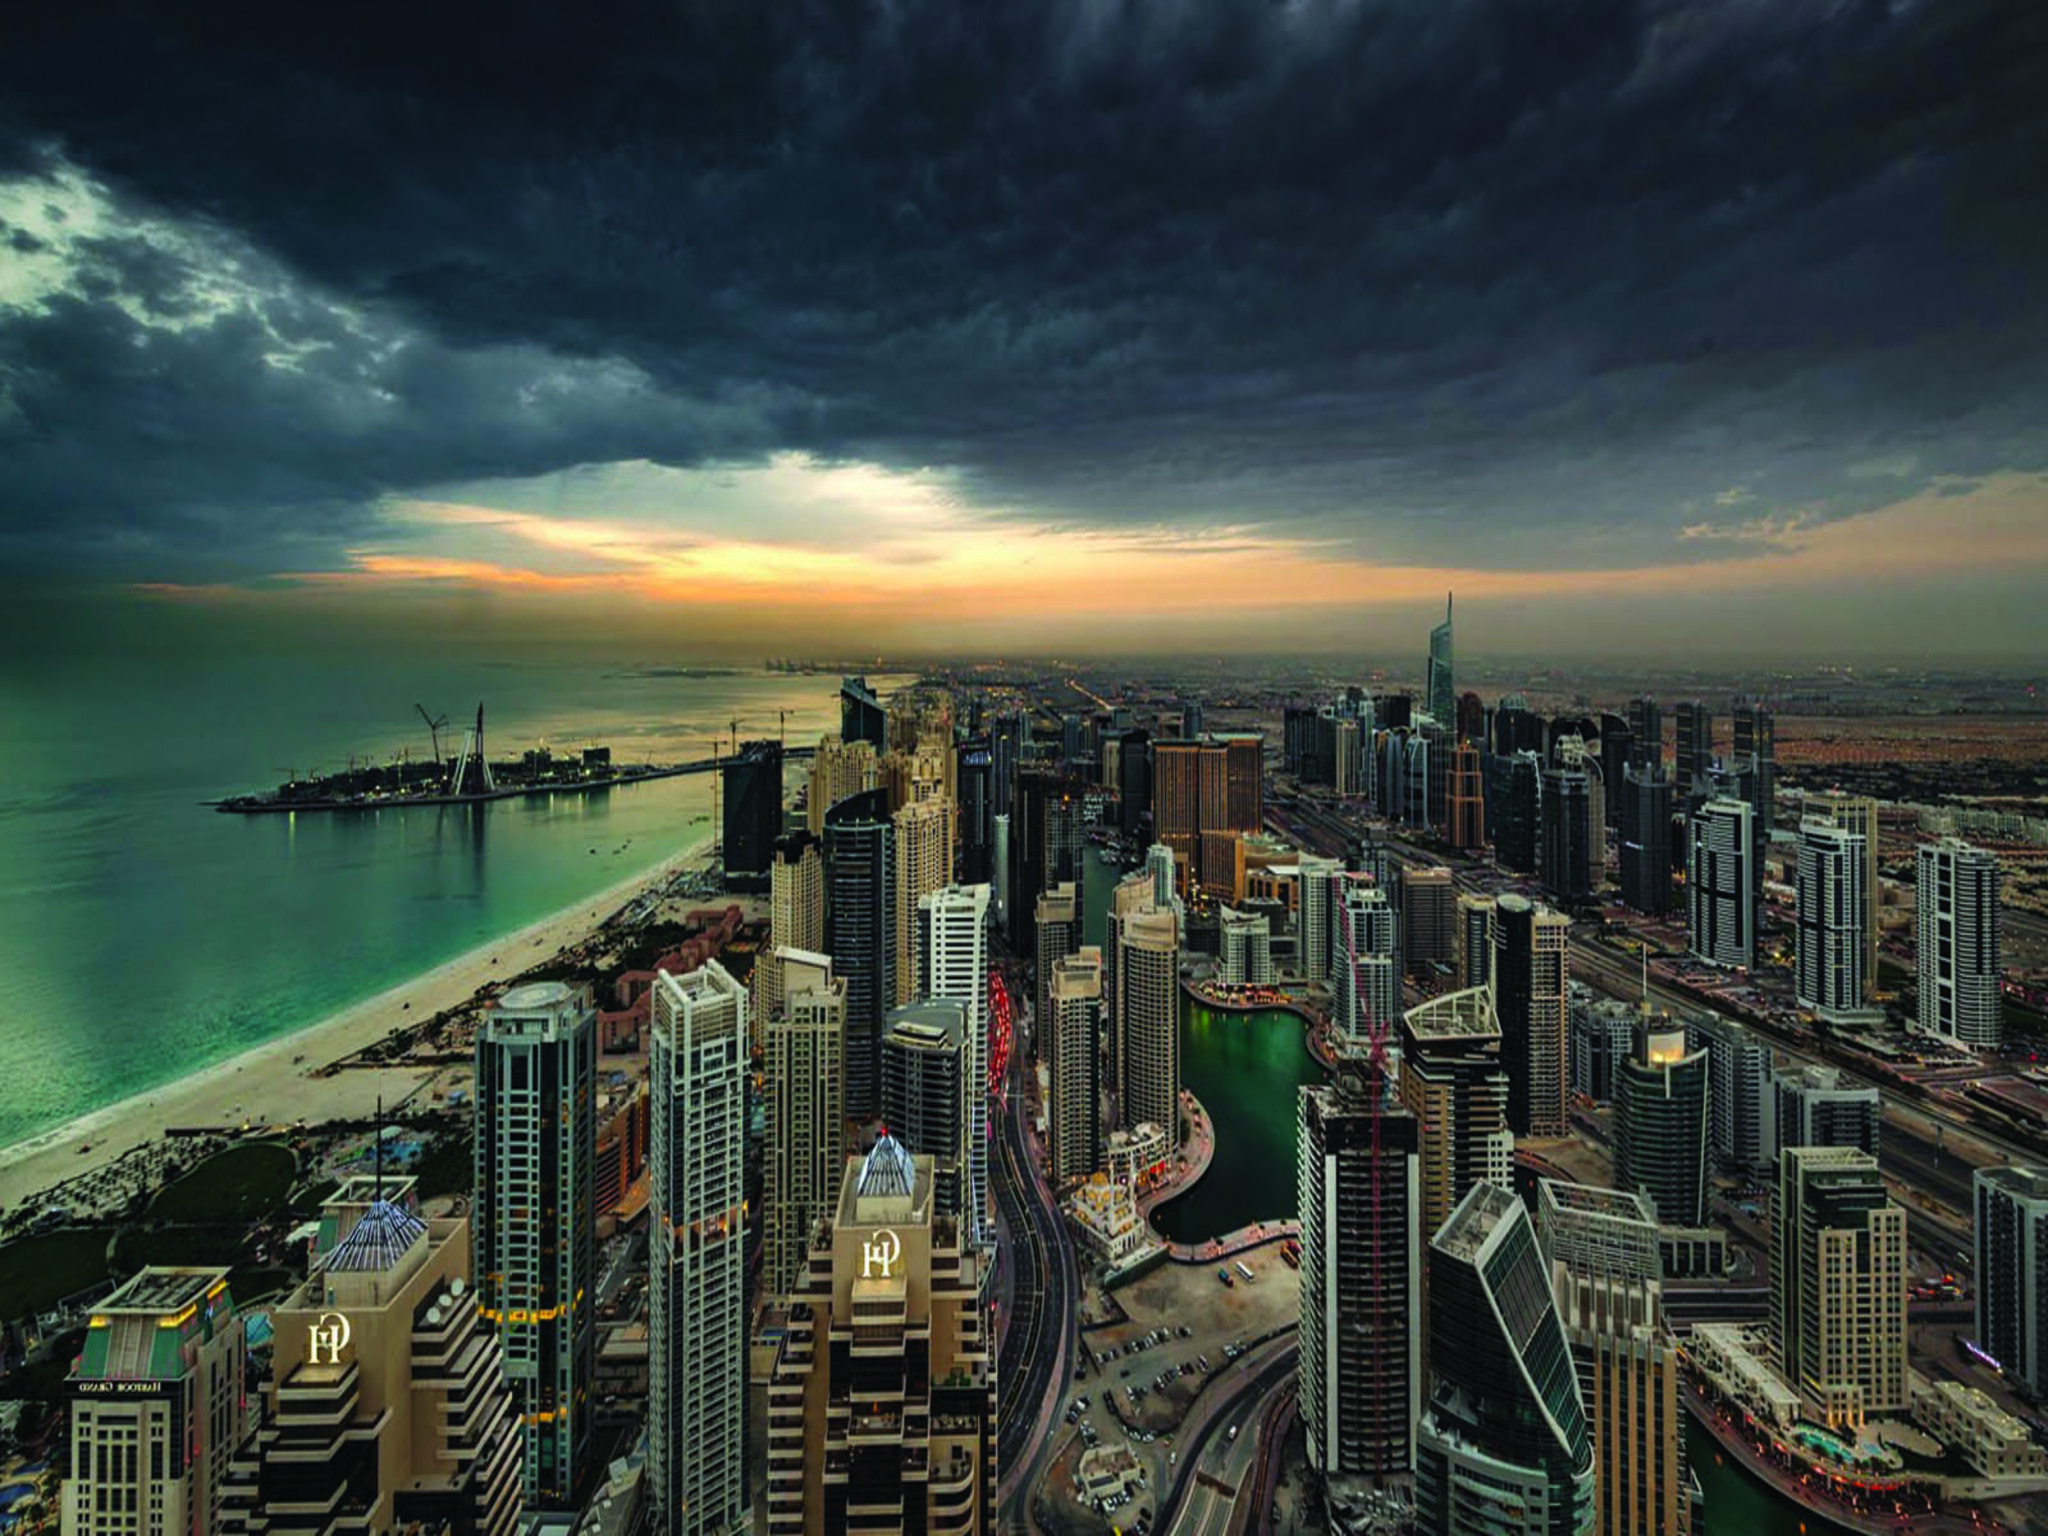 UAE Weather: Meteorology warns of more rain this week in the Emirates